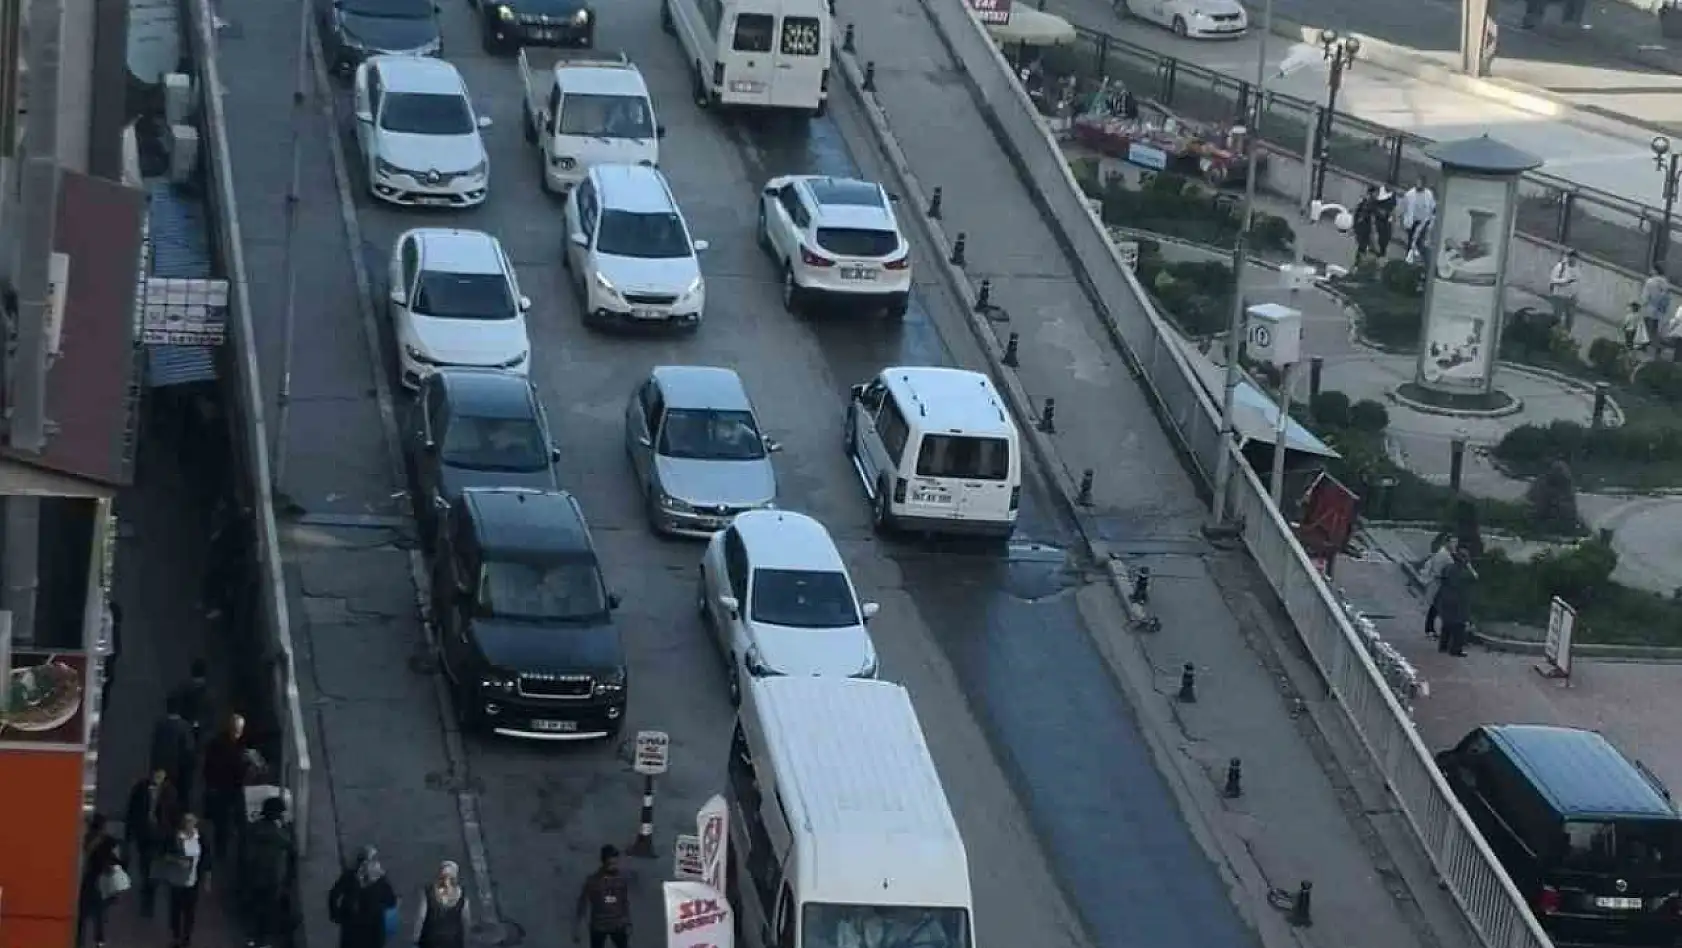 Zonguldak'ta kaç tane araba var?